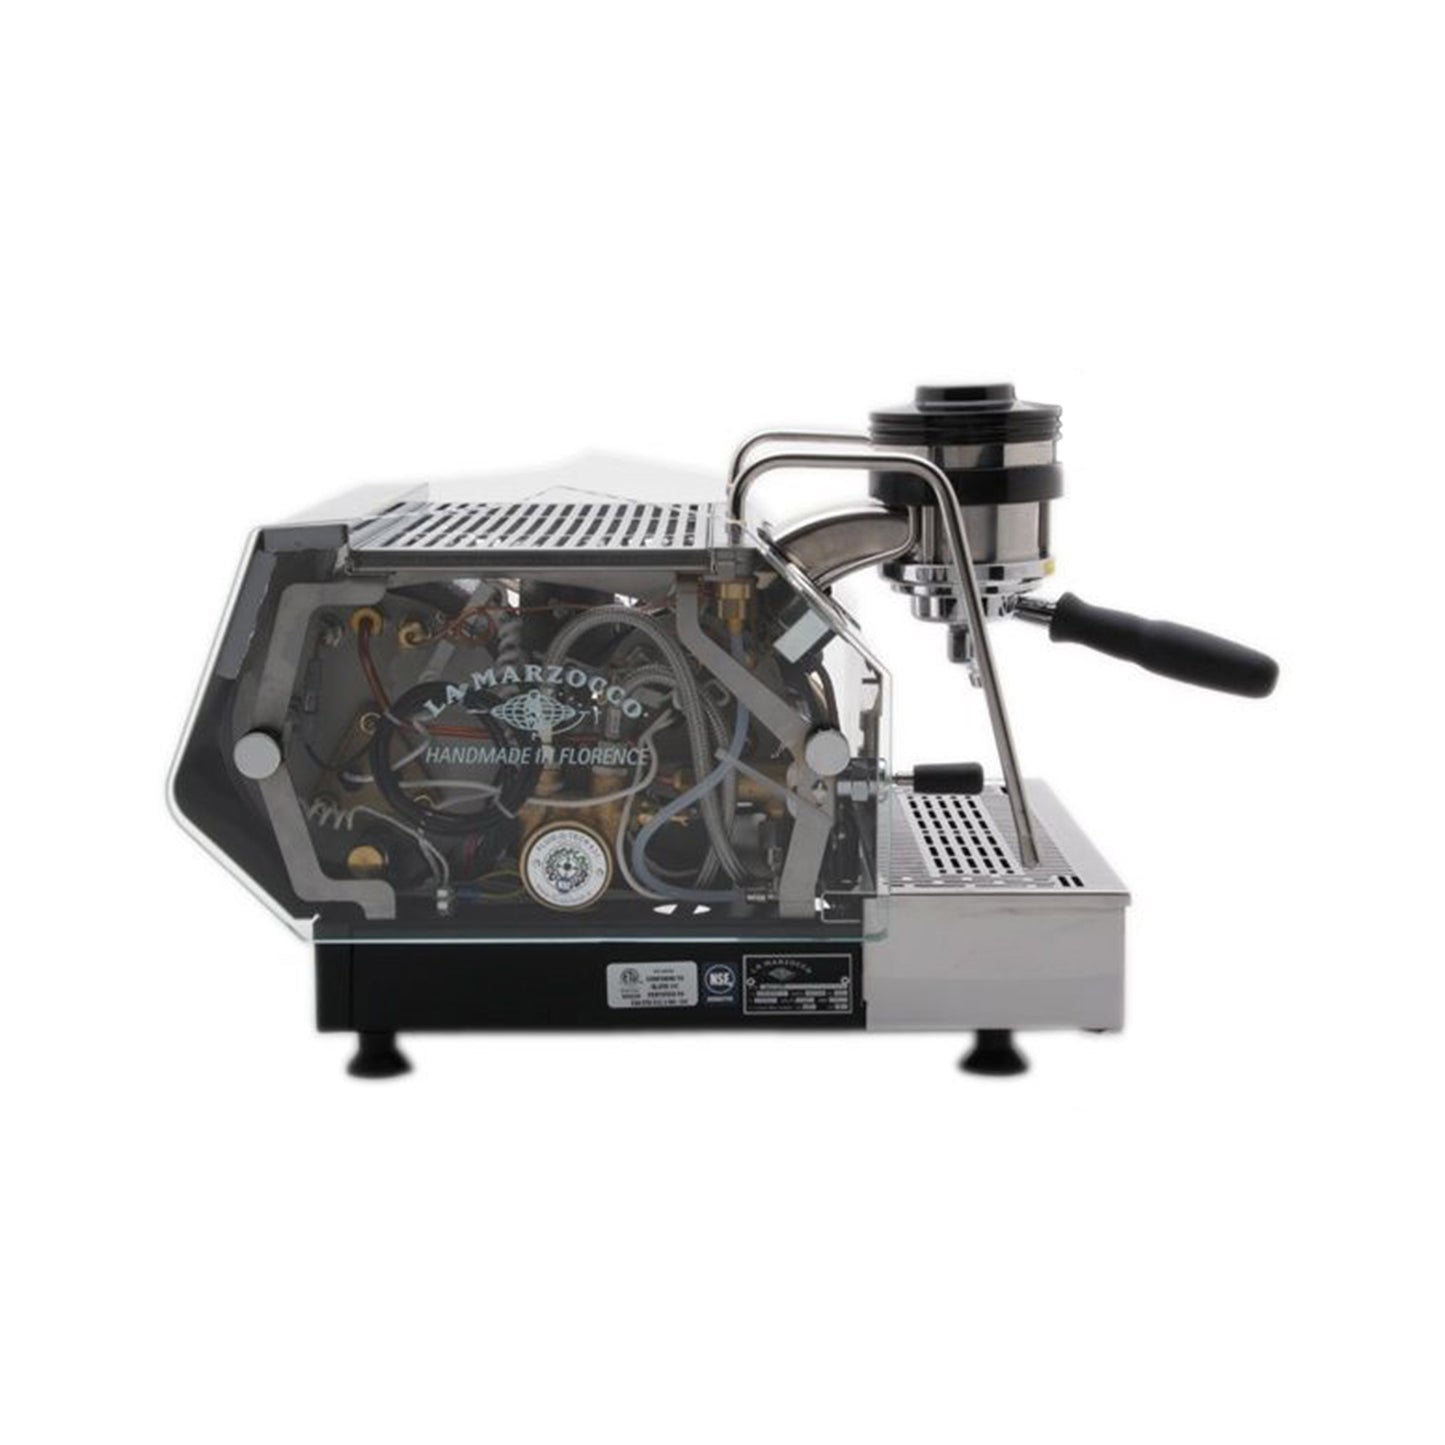 La Marzocco GS/3 – Espresso Machine